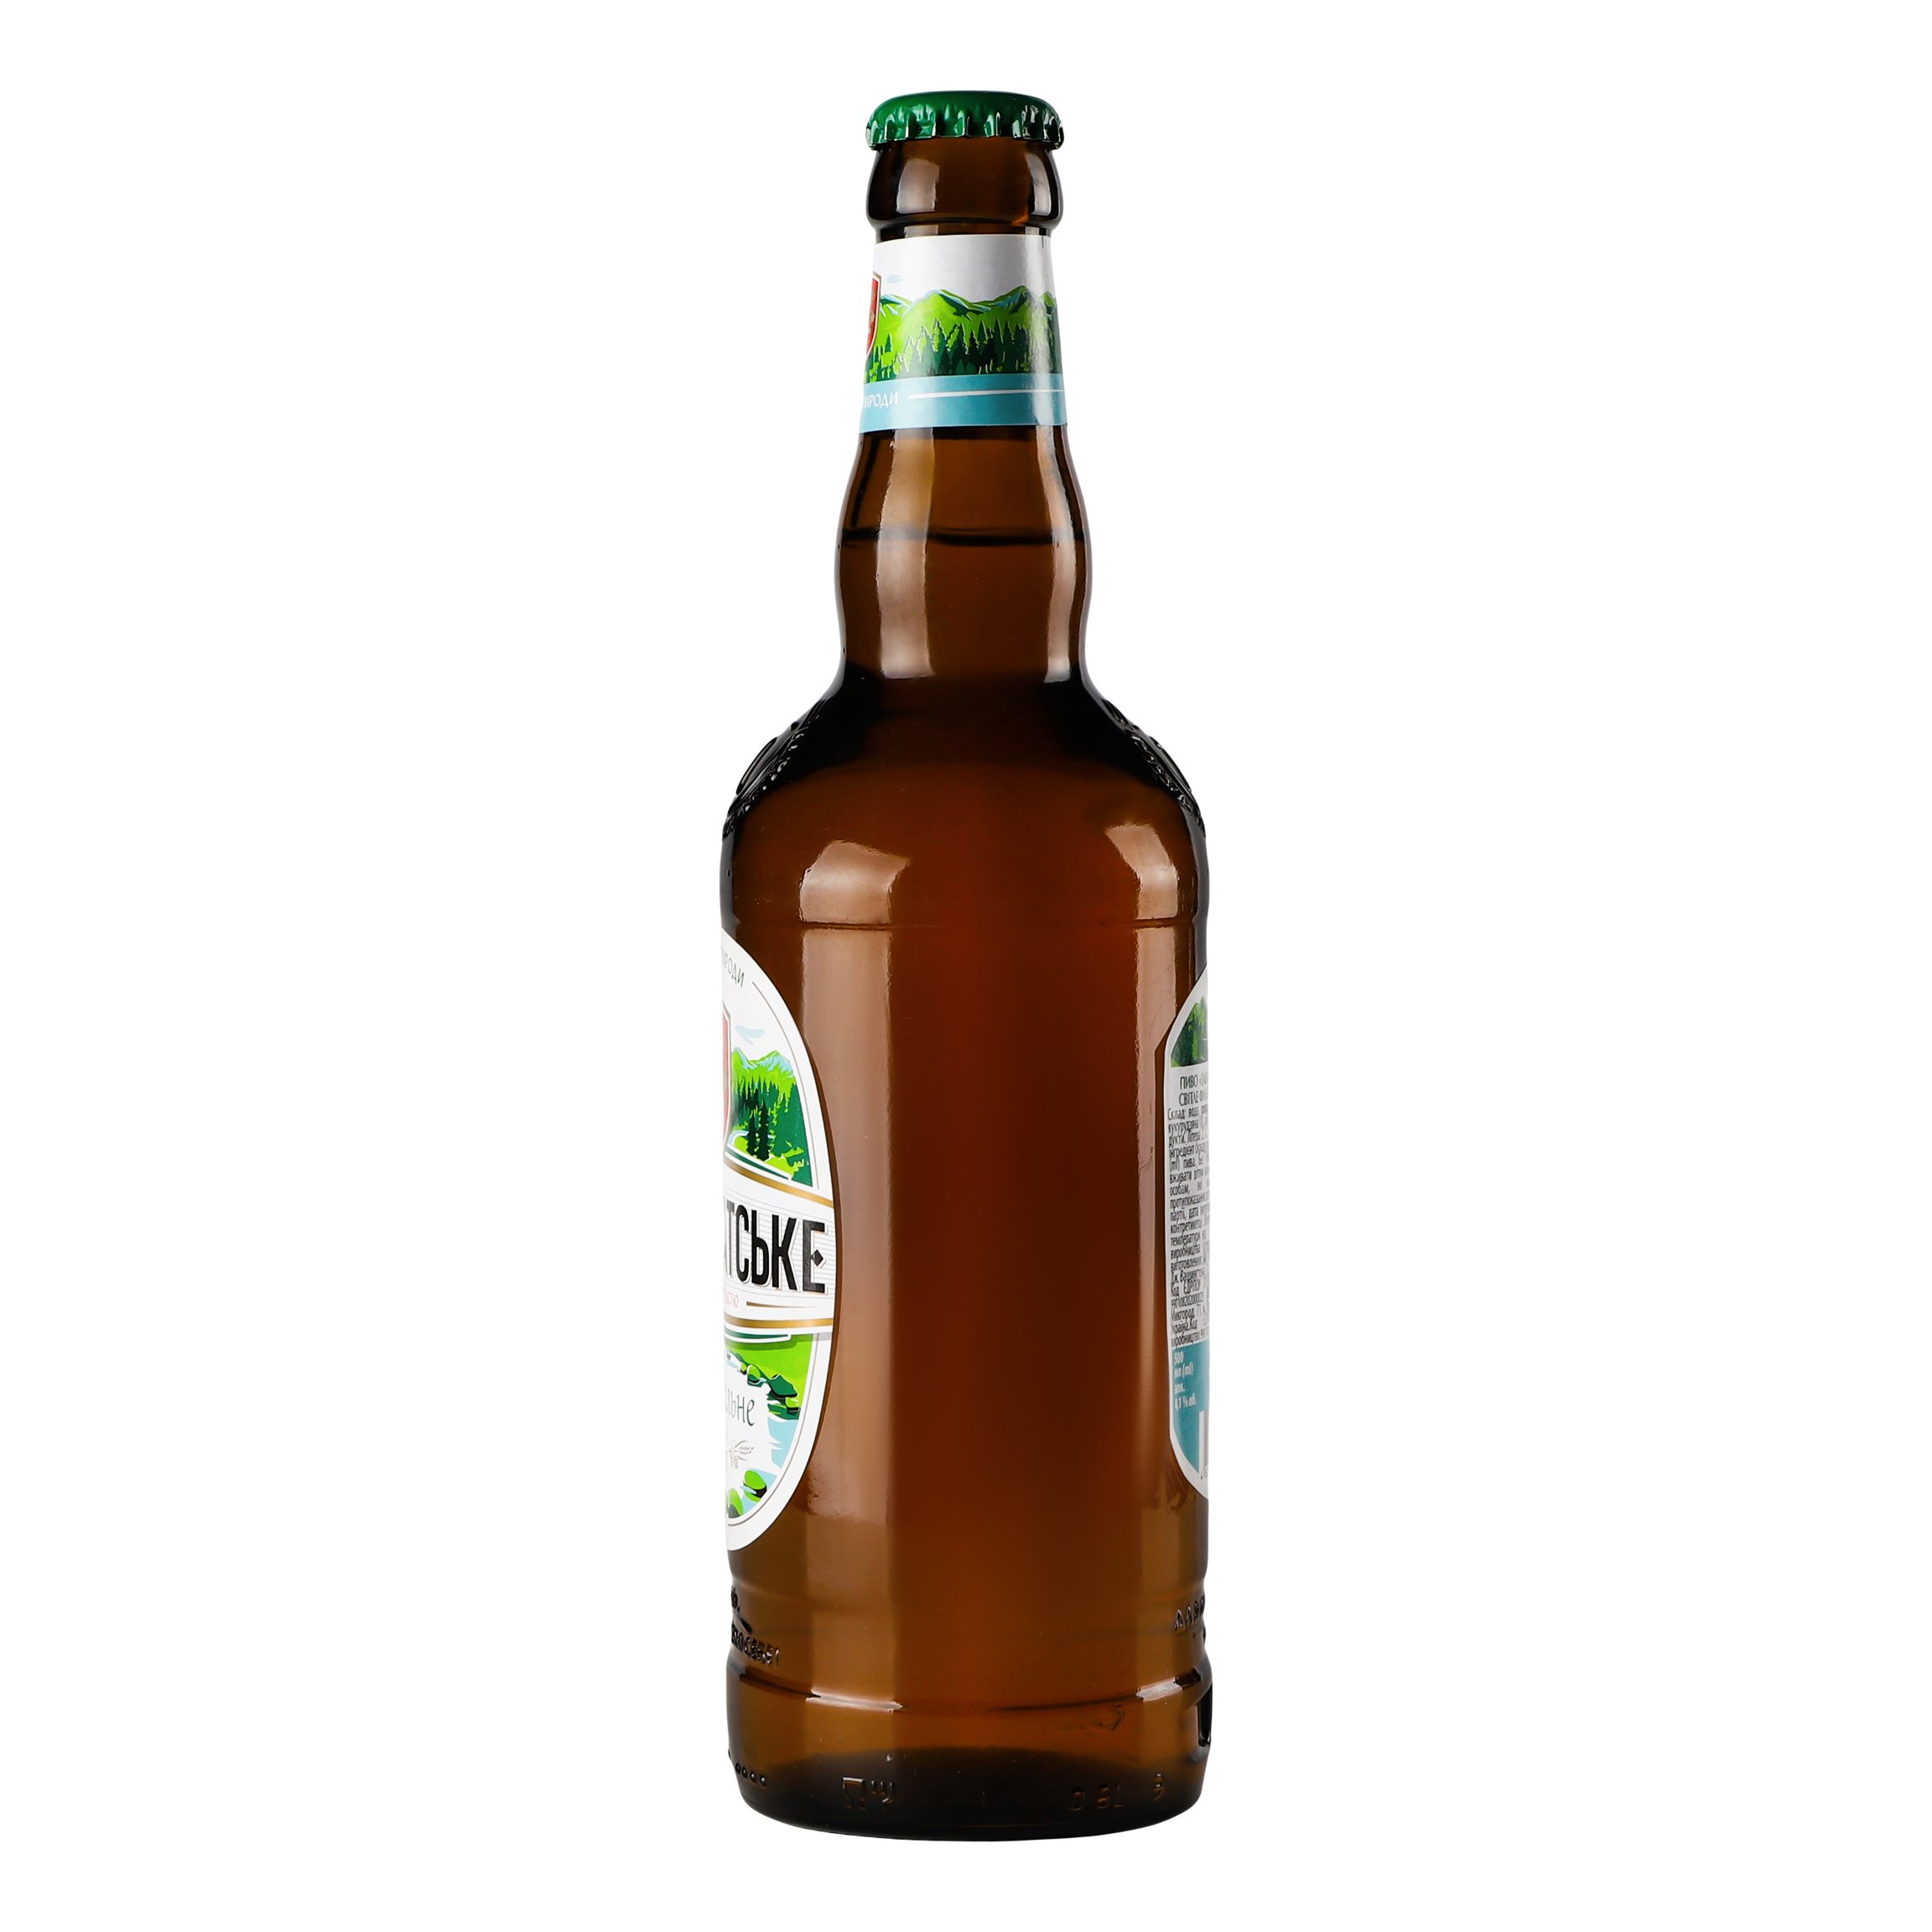 Пиво Перша приватна броварня Закарпатское, светлое, фильтрованное, 4,1%, 0,5 л (660937) - фото 3